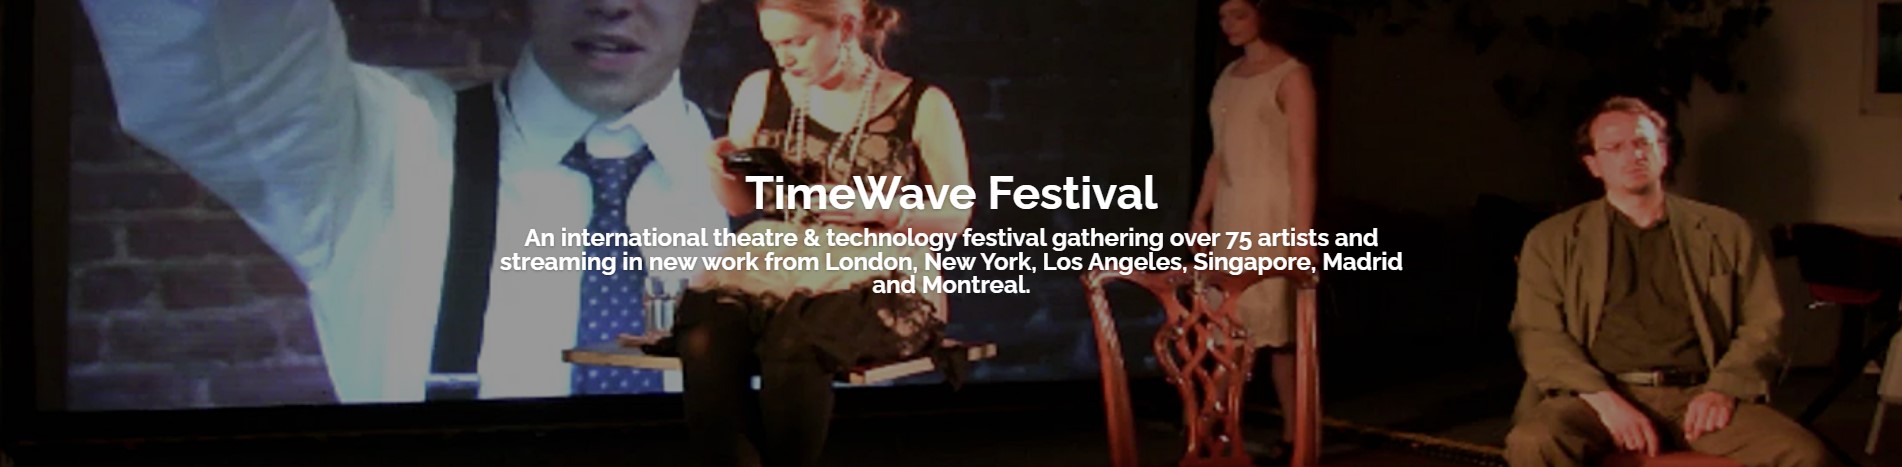 TimeWave Festival Header Image